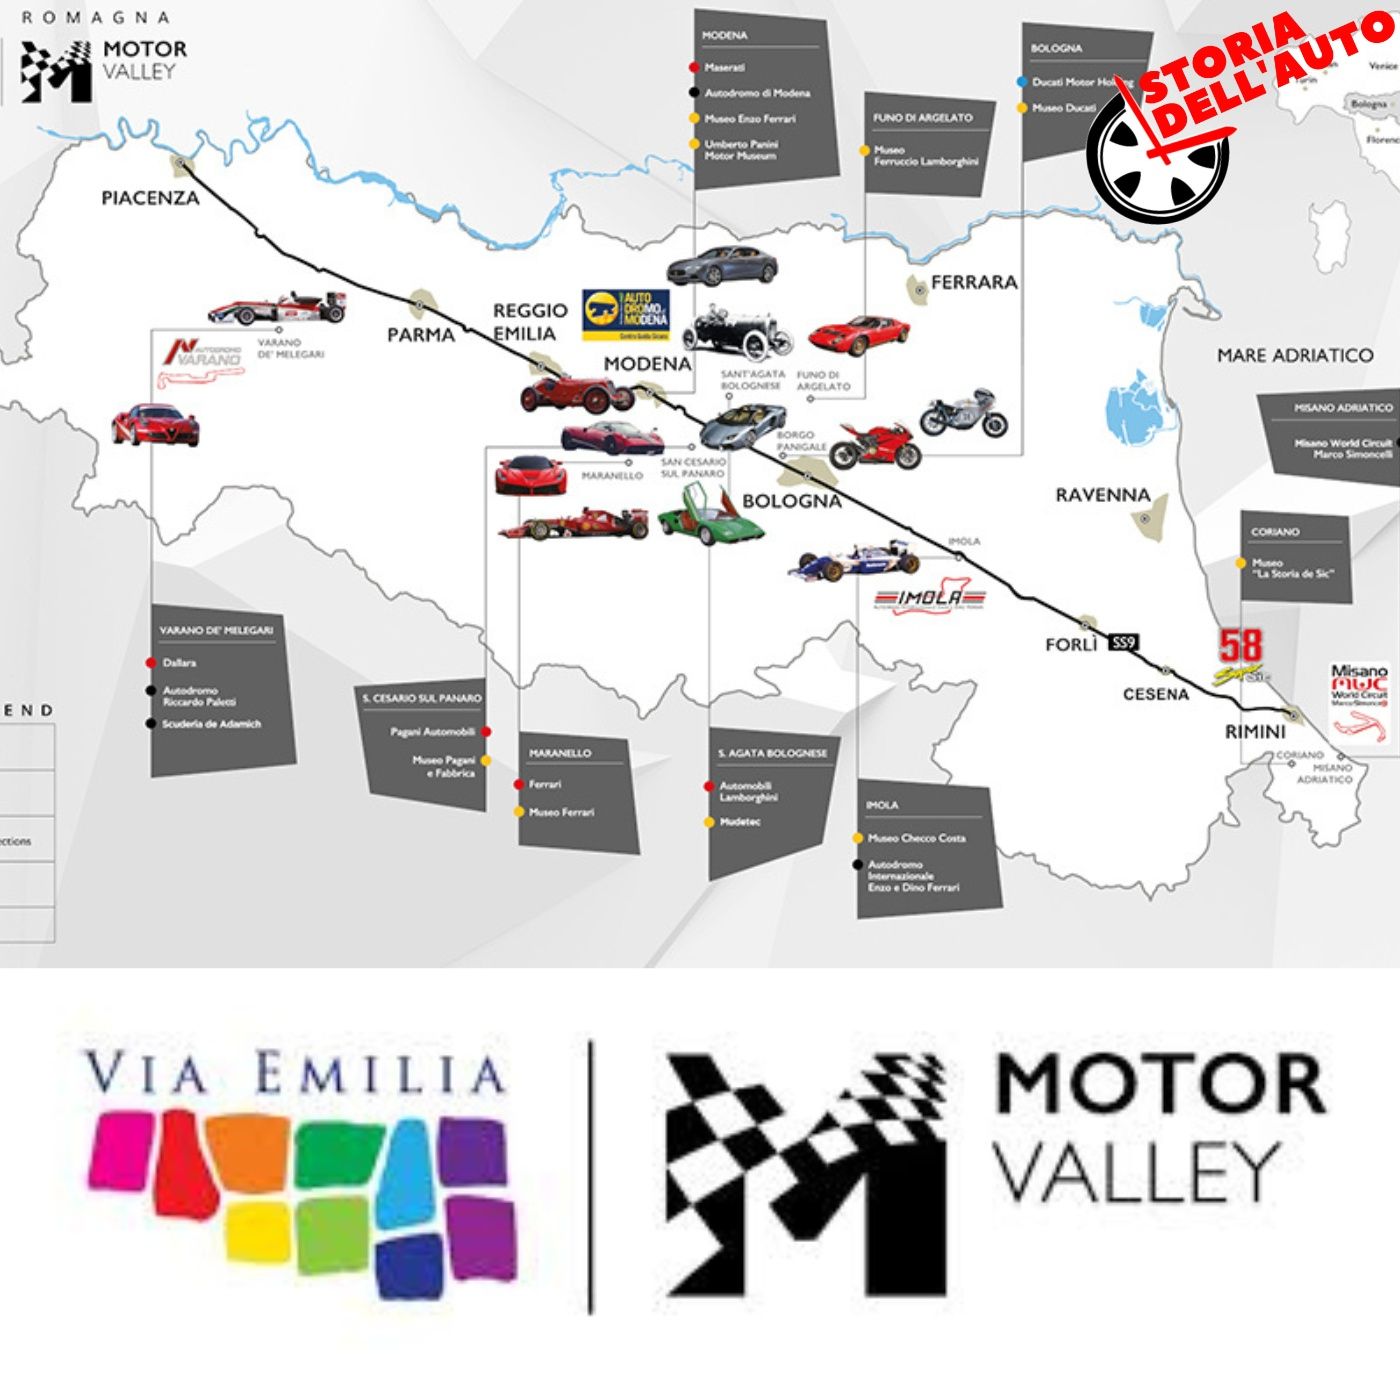 Motor Valley: un viaggio d'eccellenza in Emilia Romagna